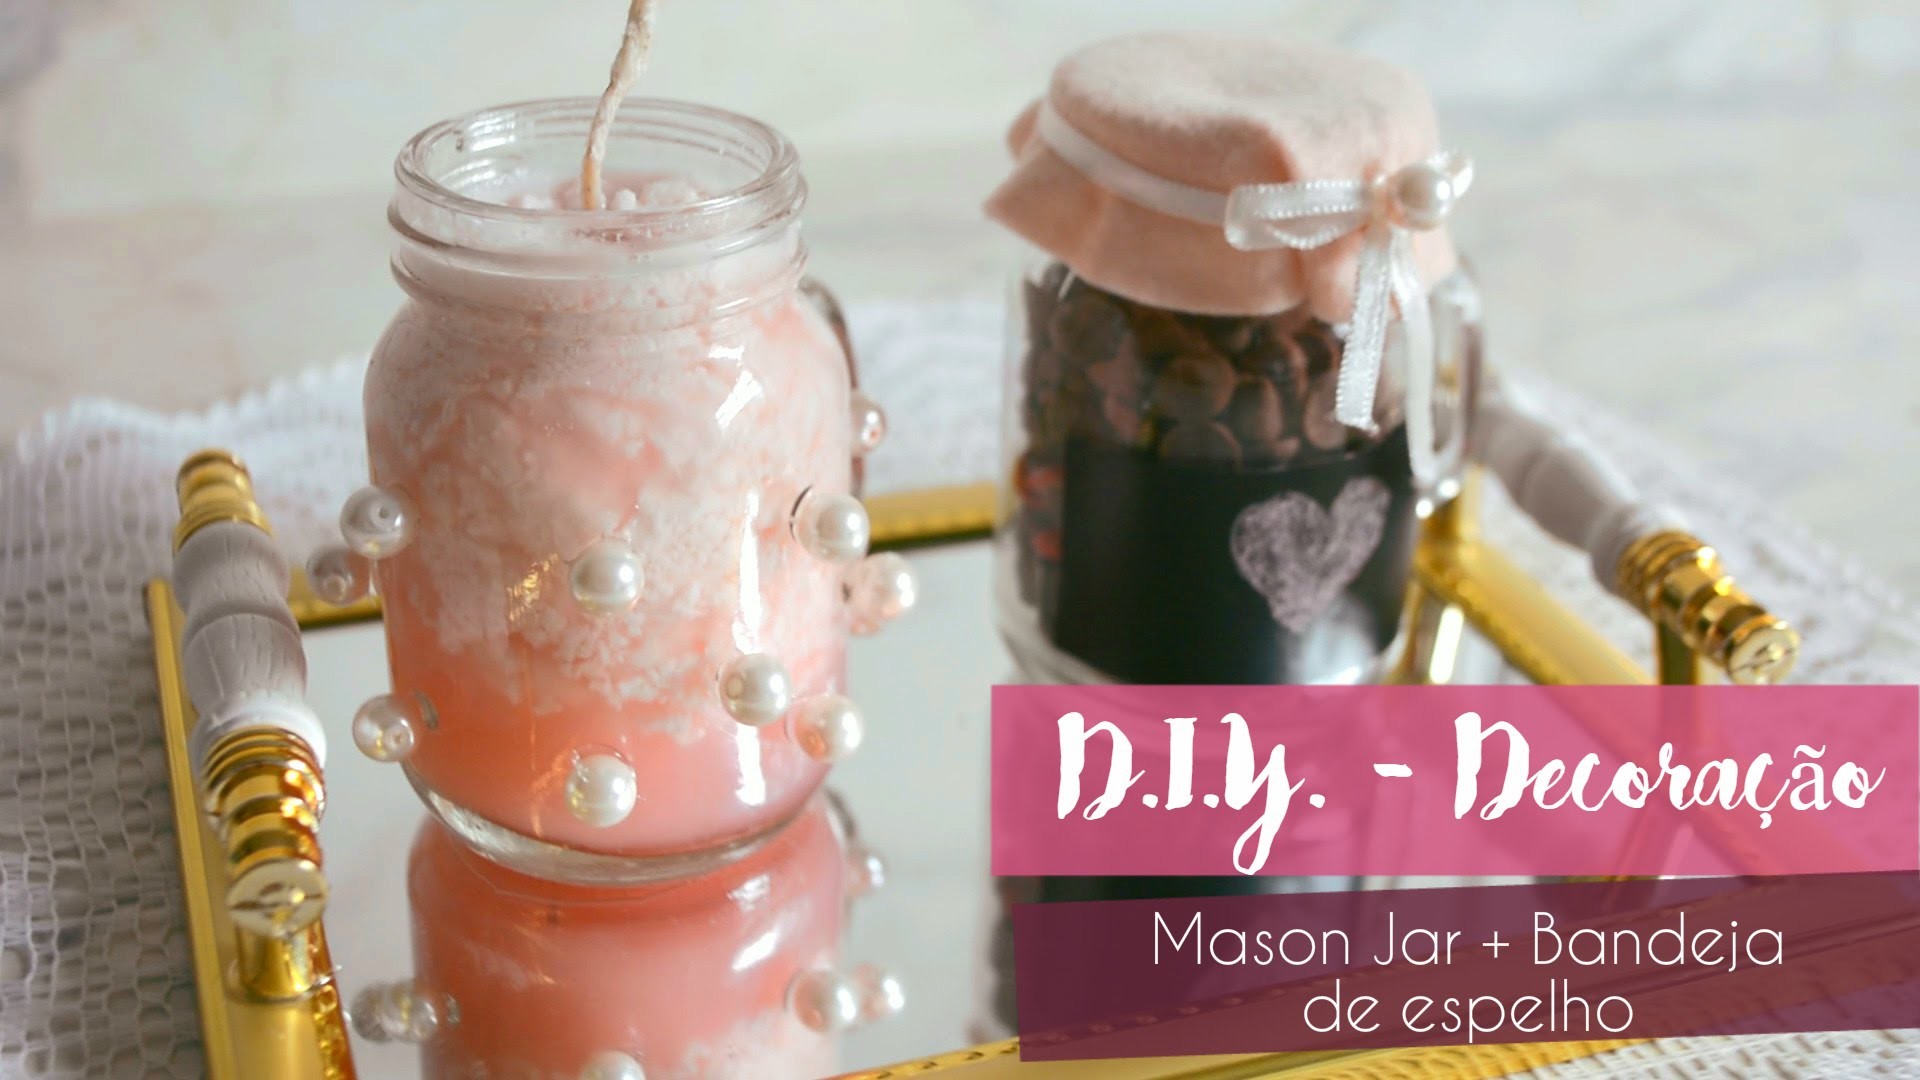 D.I.Y. de Decoração - Mason Jar - Chocolate | Bandeja de Espelho | Vela Perfumada